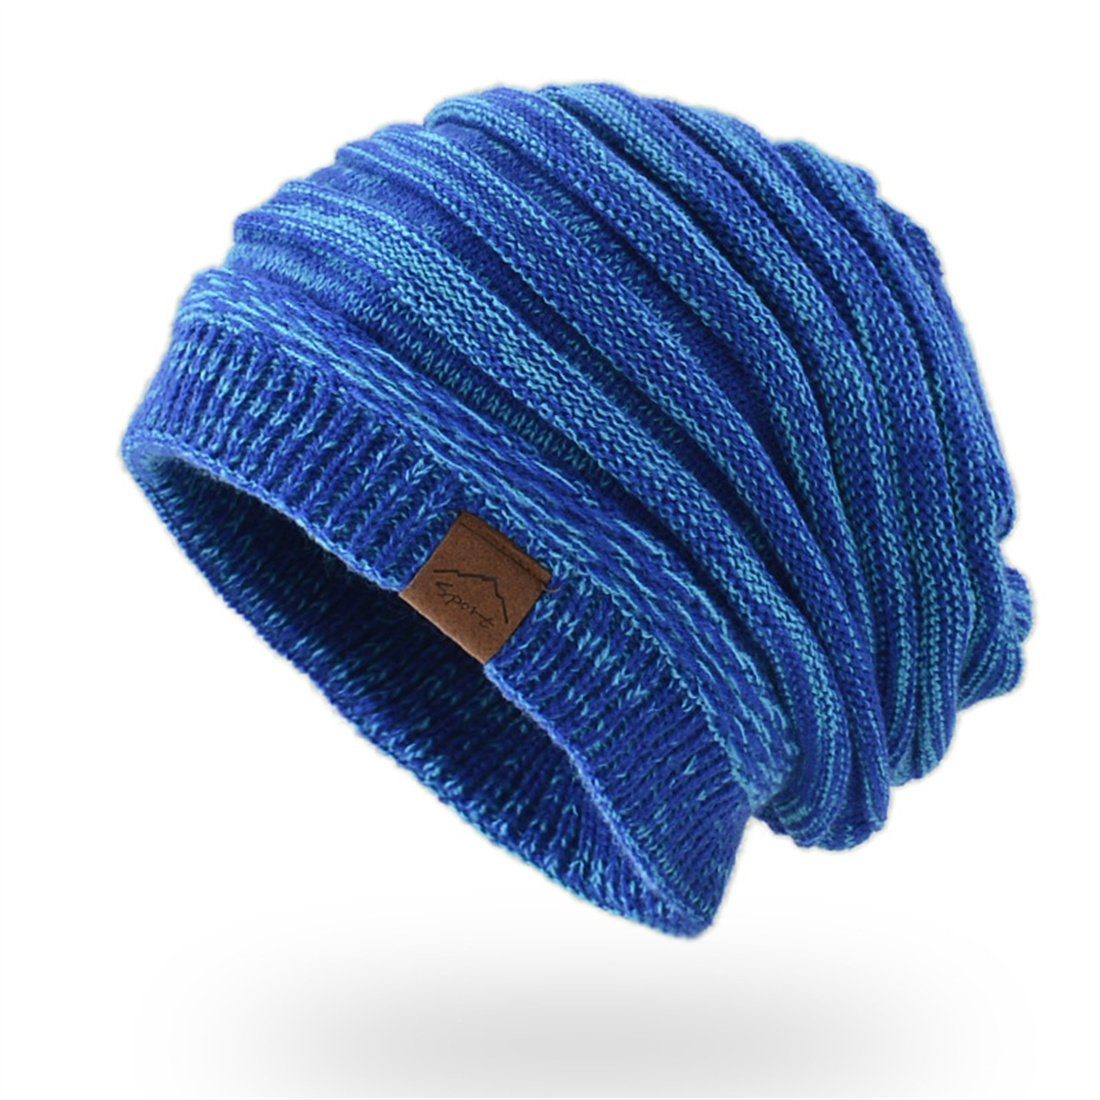 DÖRÖY Strickmütze Unisex Winter warme Strickmütze, retro verdickte warme Wollmütze blau